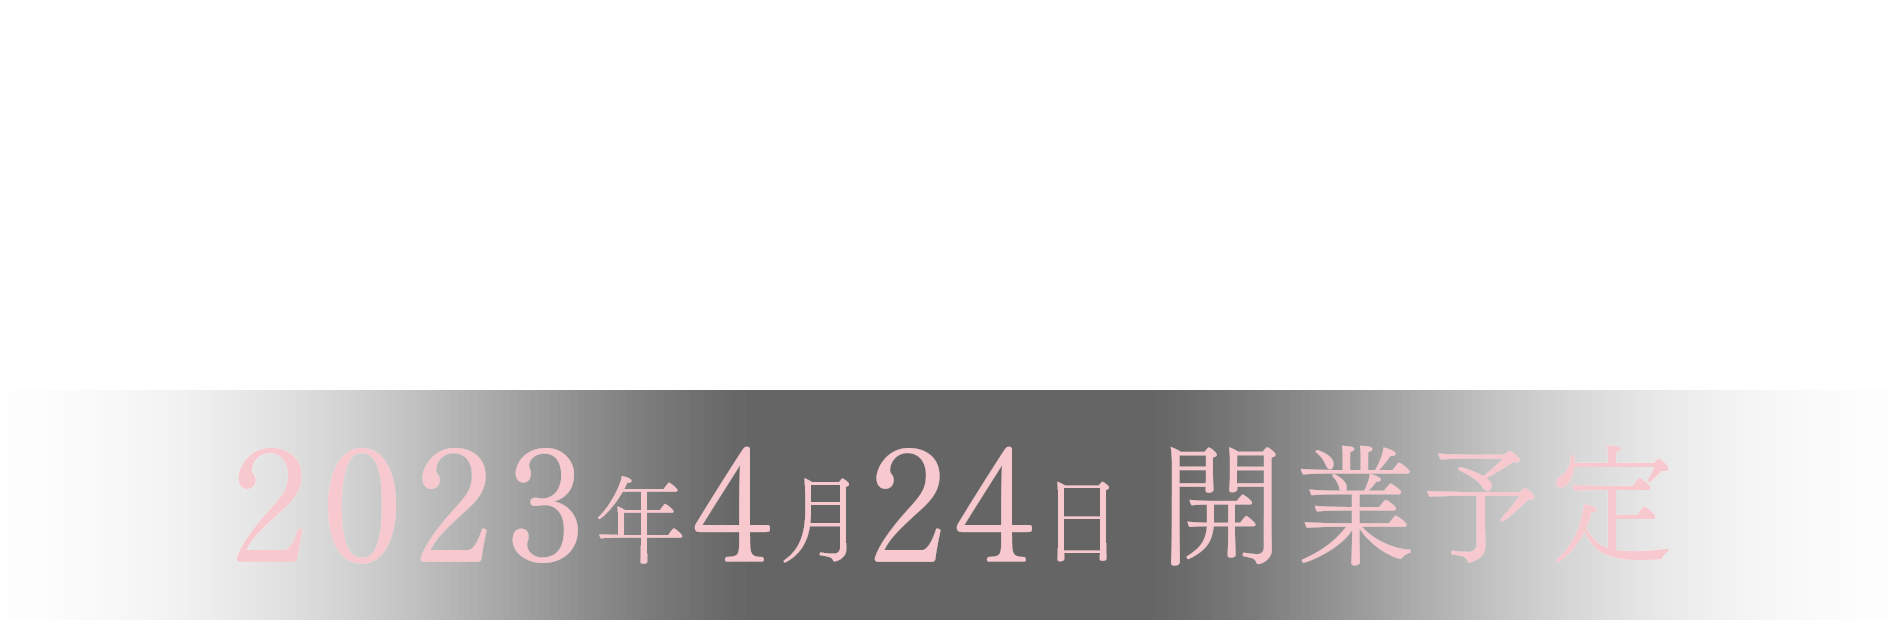 GINZA HOTEL by GRANBELL 銀座7丁目、新ホテル誕生。2023年春 開業予定